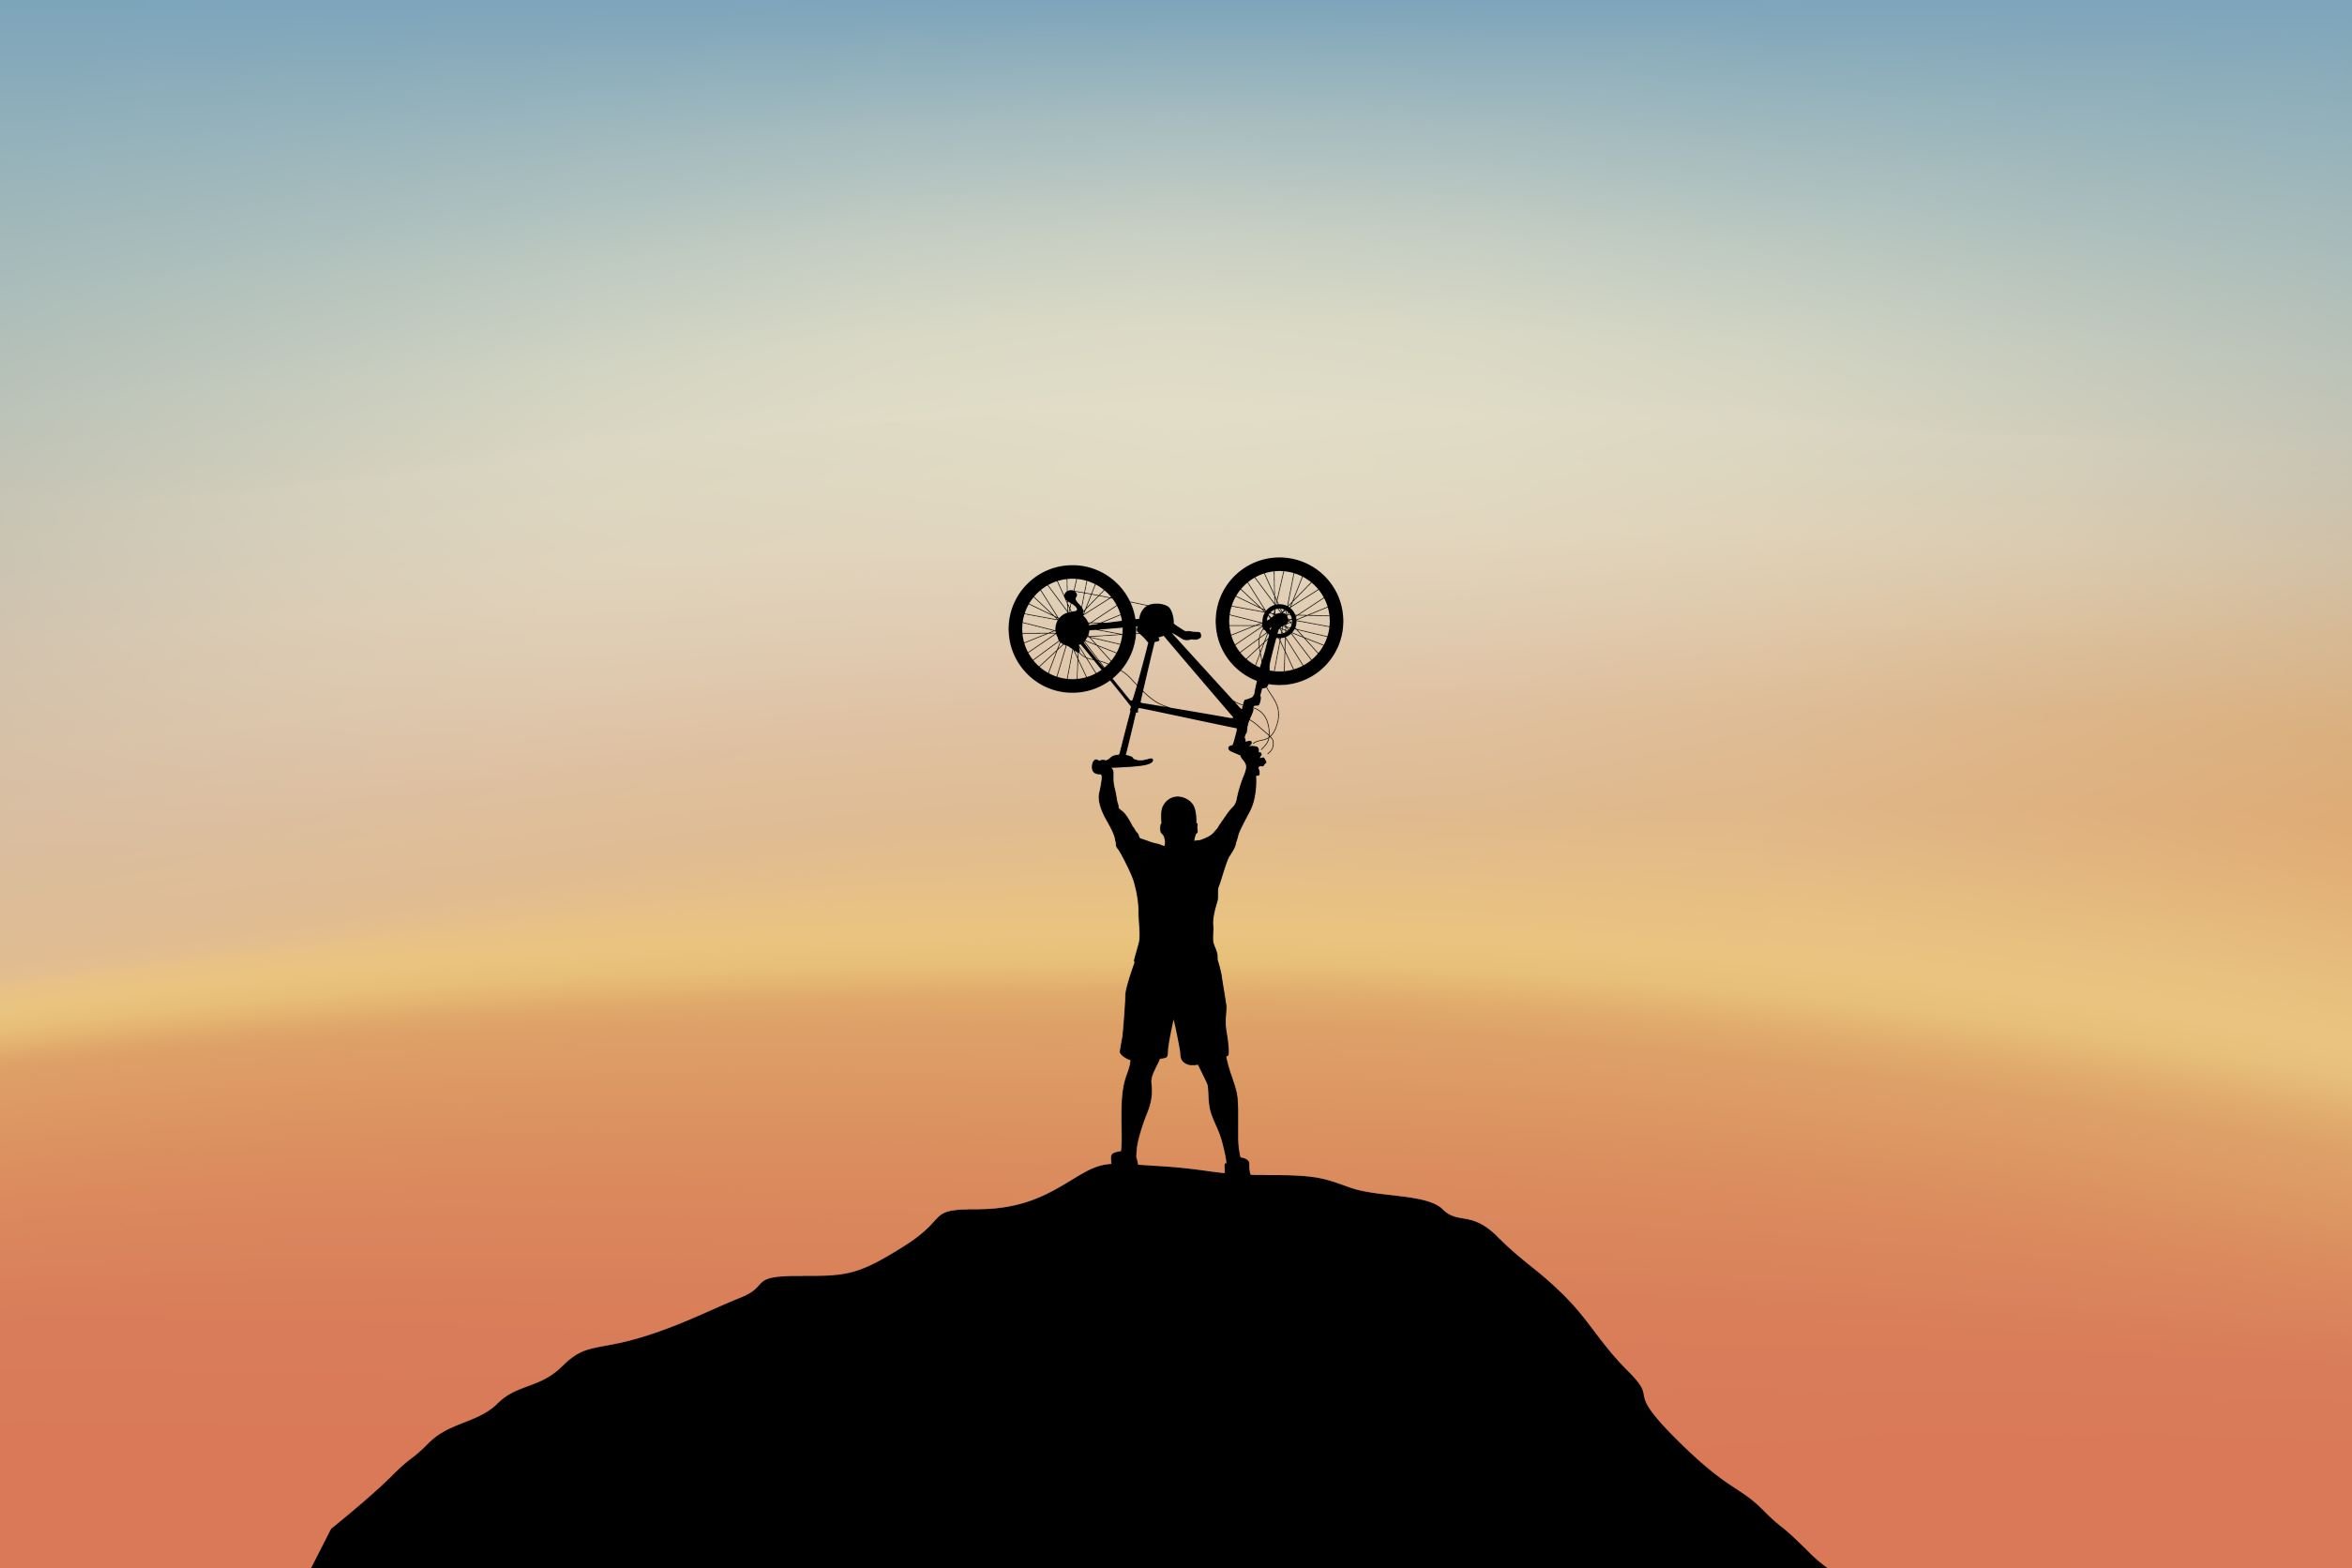 L'uomo fa un gesto di vittoria, tenendo la mountain bike sopra la testa in cima a una collina